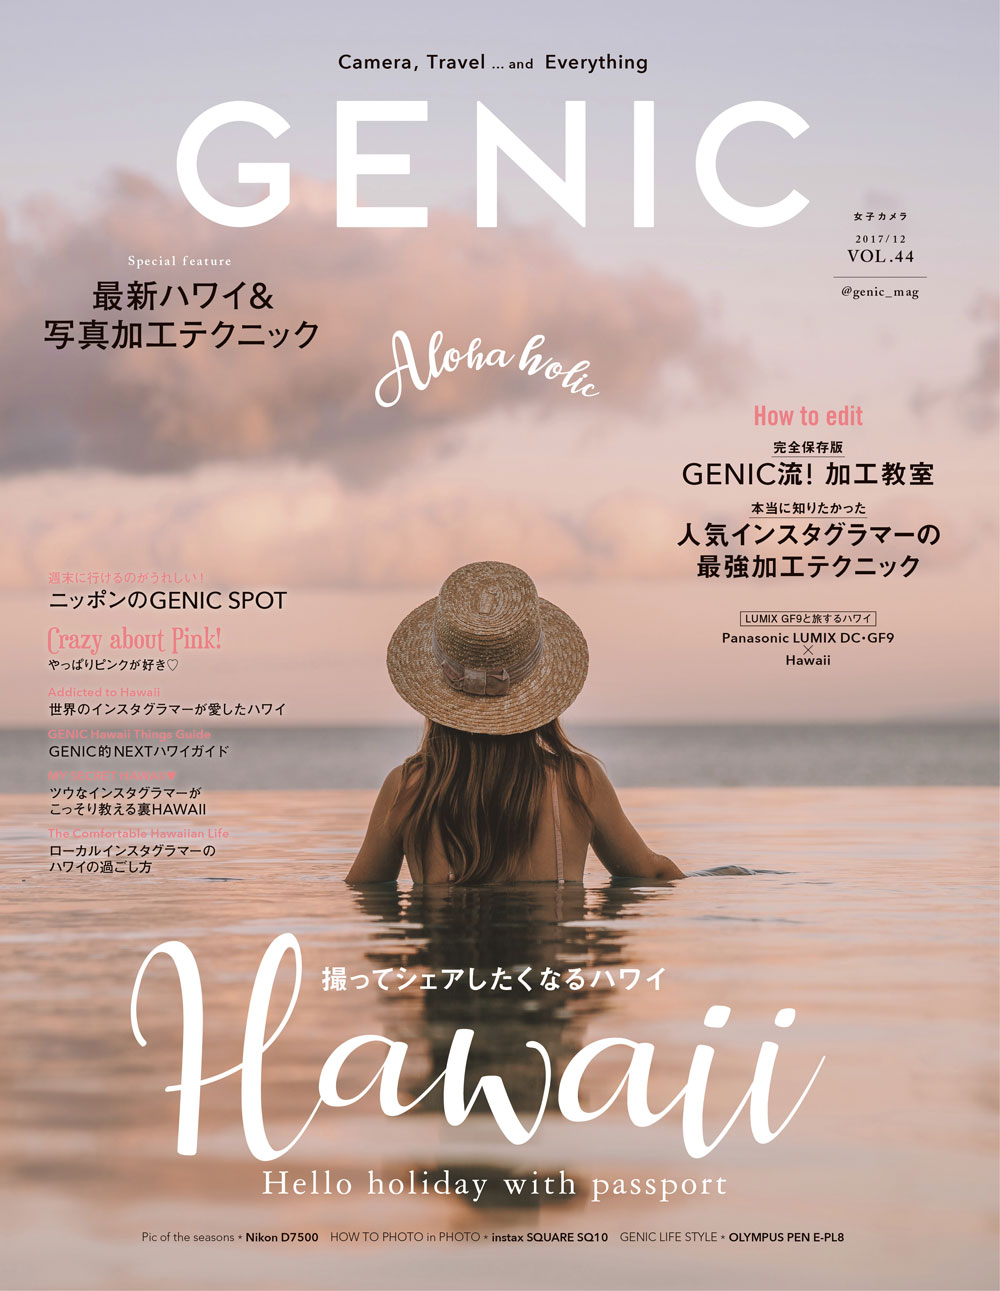 人気インスタグラマーの最強写真加工テクニック シェアしたくなる最新ハワイ を 女子カメラgenic12月号 が大特集 ミツバチワークス株式会社のプレスリリース